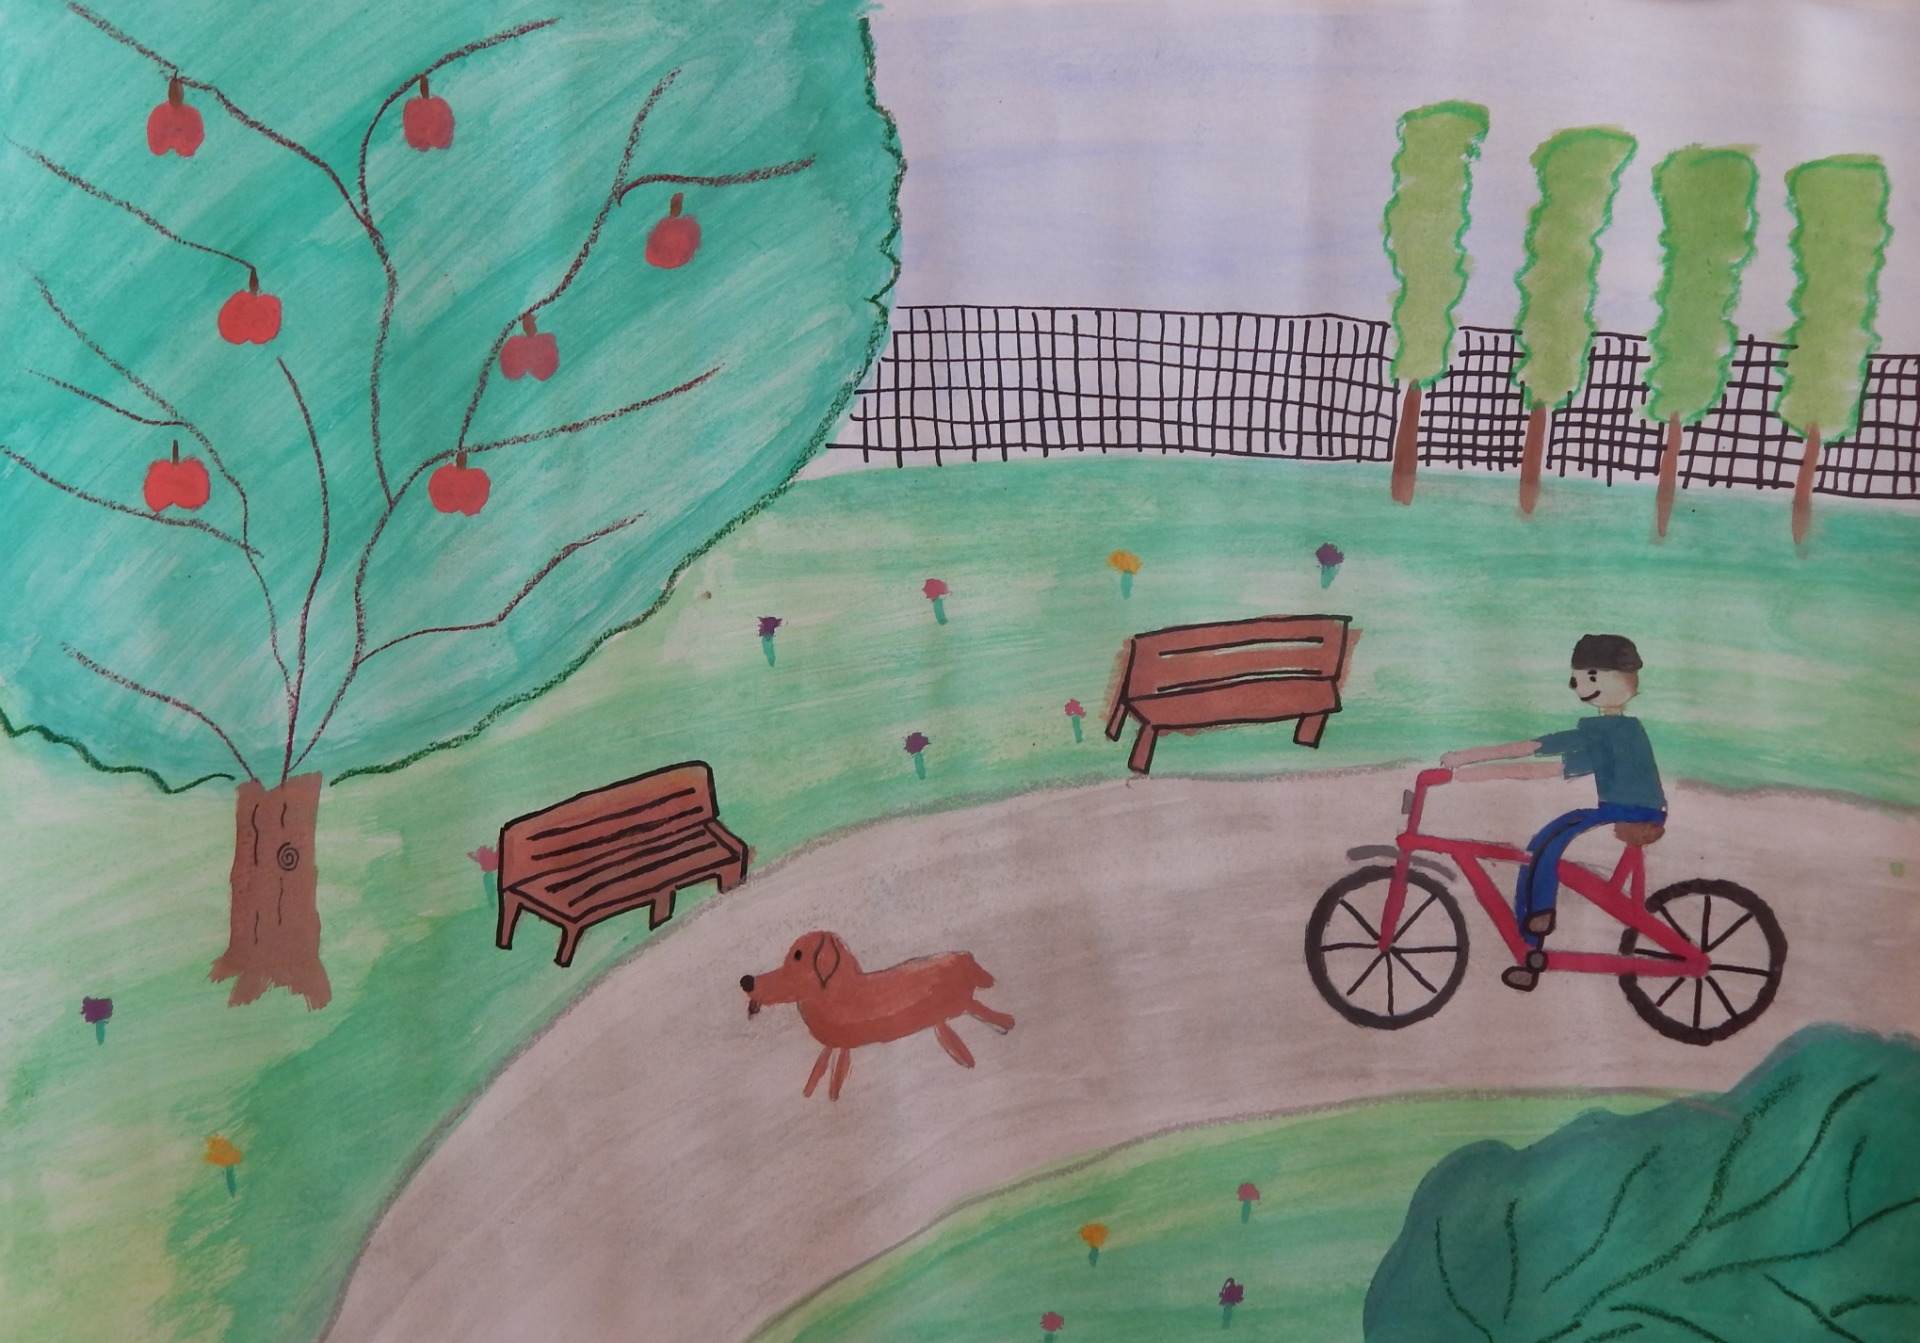 Dziecko jadące na rowerze po piaszczystej drodze. Na drugim planie ławeczki piękne zielone drzewo.